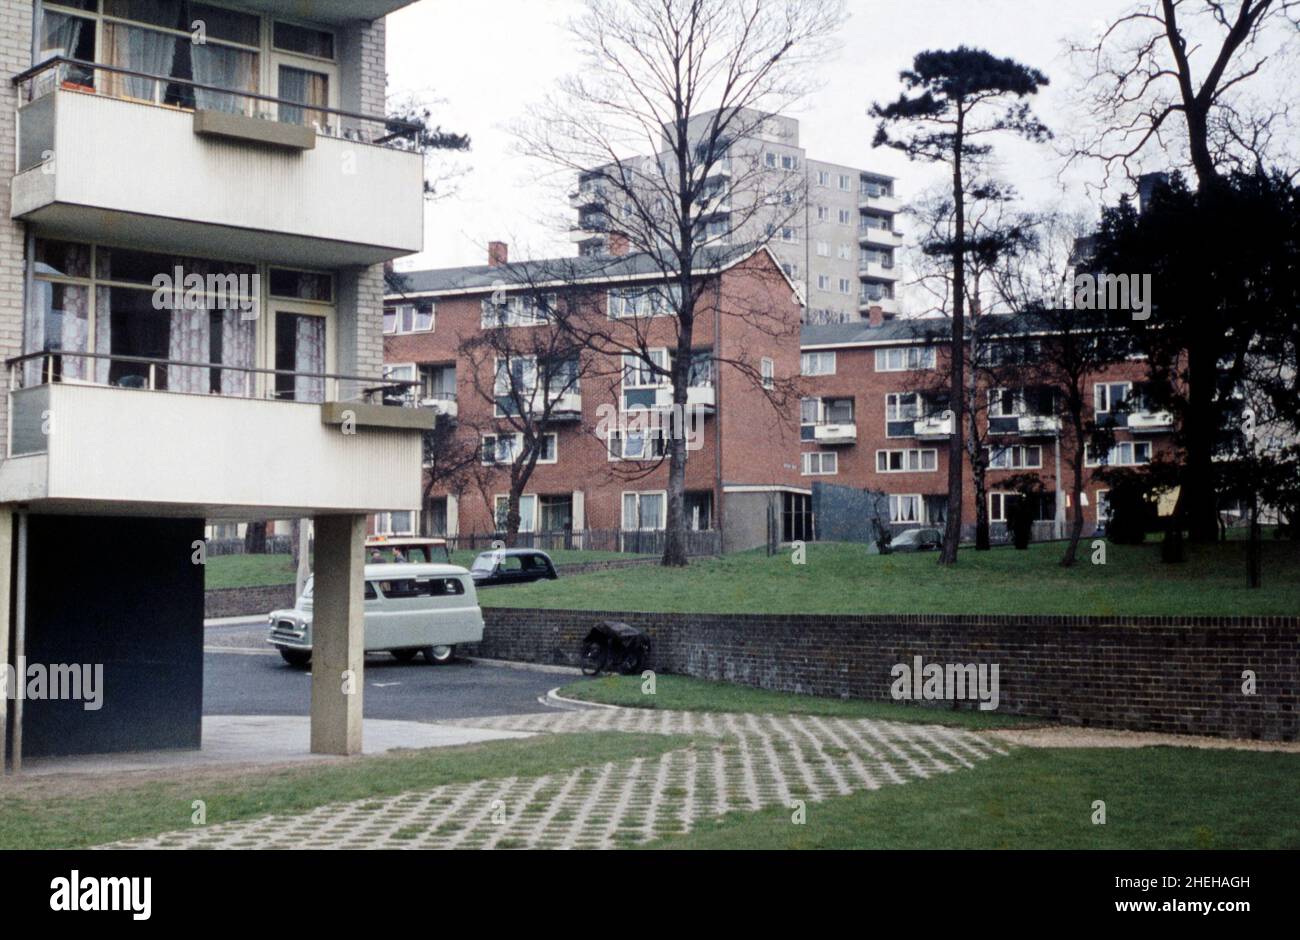 Une photographie en 1960s du mélange des appartements en béton modernes et plus traditionnels en briques à Dilton Gardens, Roehampton, Londres, Angleterre, Royaume-Uni sur la partie est de la propriété Alton.Roehampton, une banlieue du sud-ouest de Londres, possède un certain nombre de grandes propriétés de maisons de conseil.Le London County Council (LCC) a construit le domaine de Roehampton en 1920s–30s et le domaine d'Alton en 1950s.L'Alton Estate, l'un des plus grands du Royaume-Uni, présente un mélange d'architecture moderniste de faible hauteur et de haute hauteur, composée à la fois d'influence scandinave et d'un brutaliste : une photographie vintage de 1960s. Banque D'Images